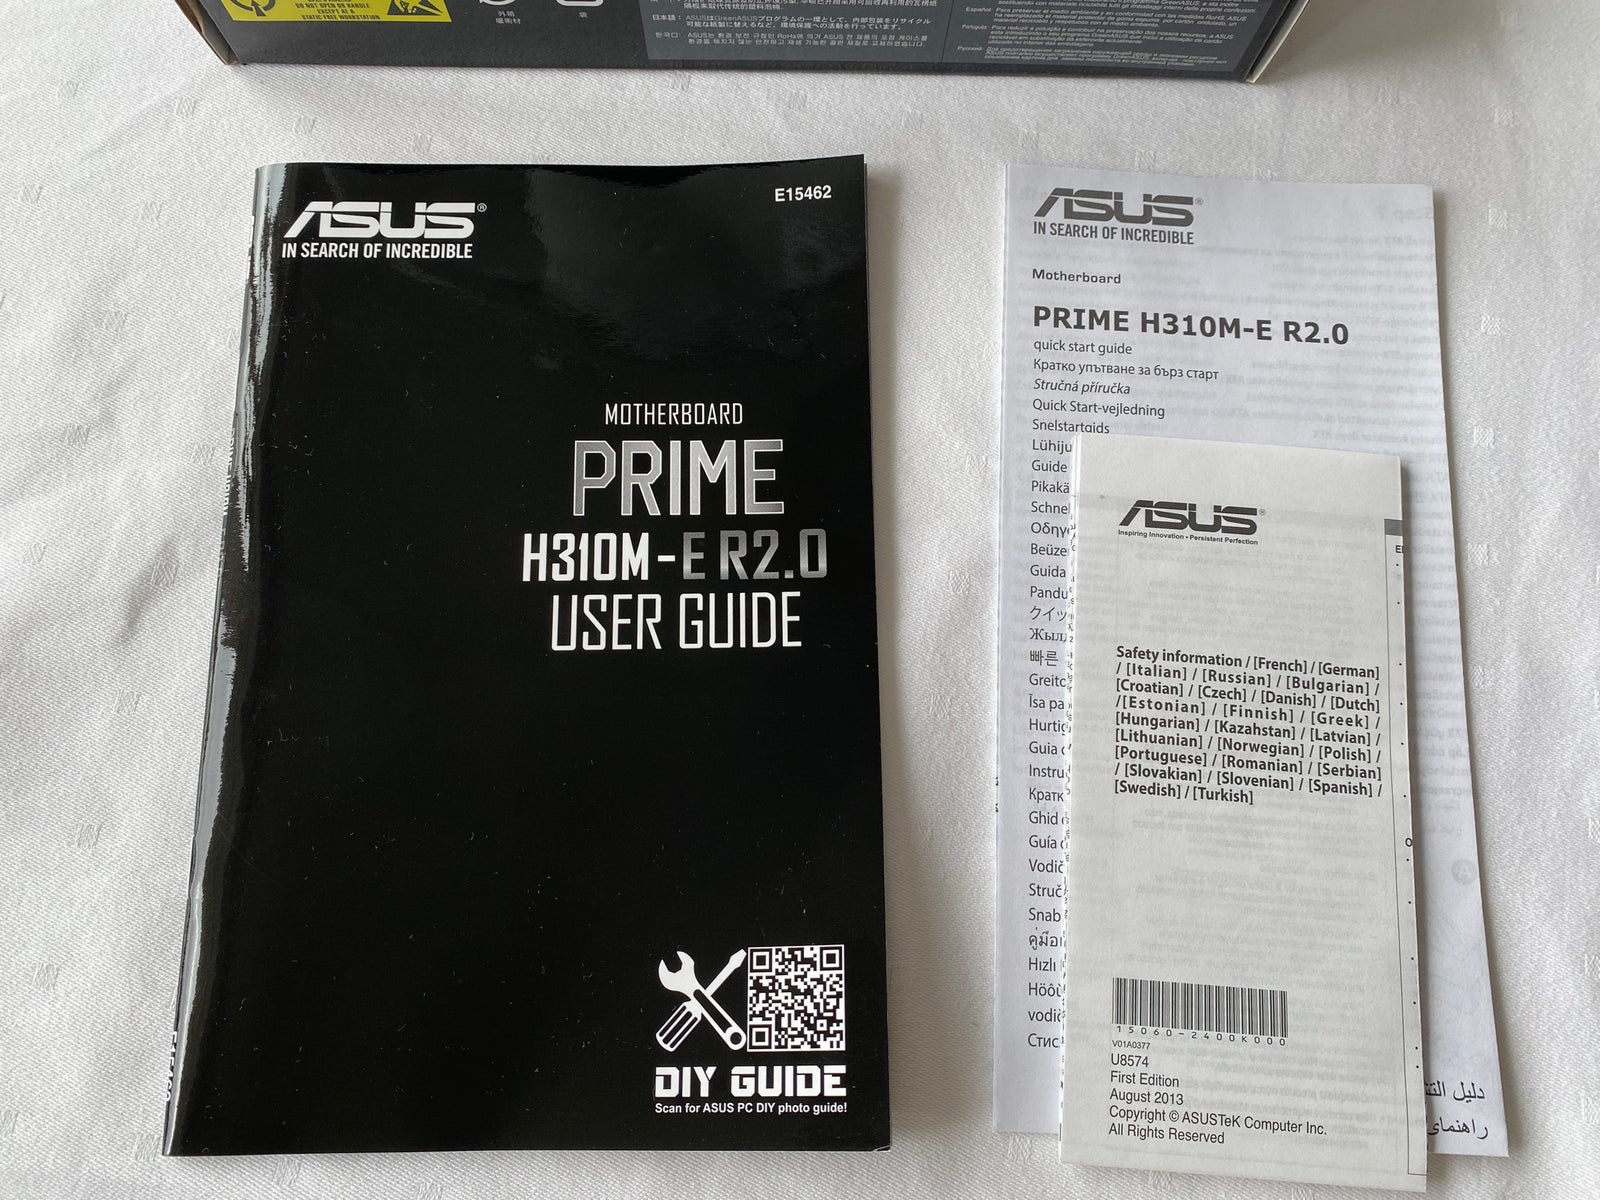 ASUS PRIME motherboard, ASUS, H310M-E R2.0